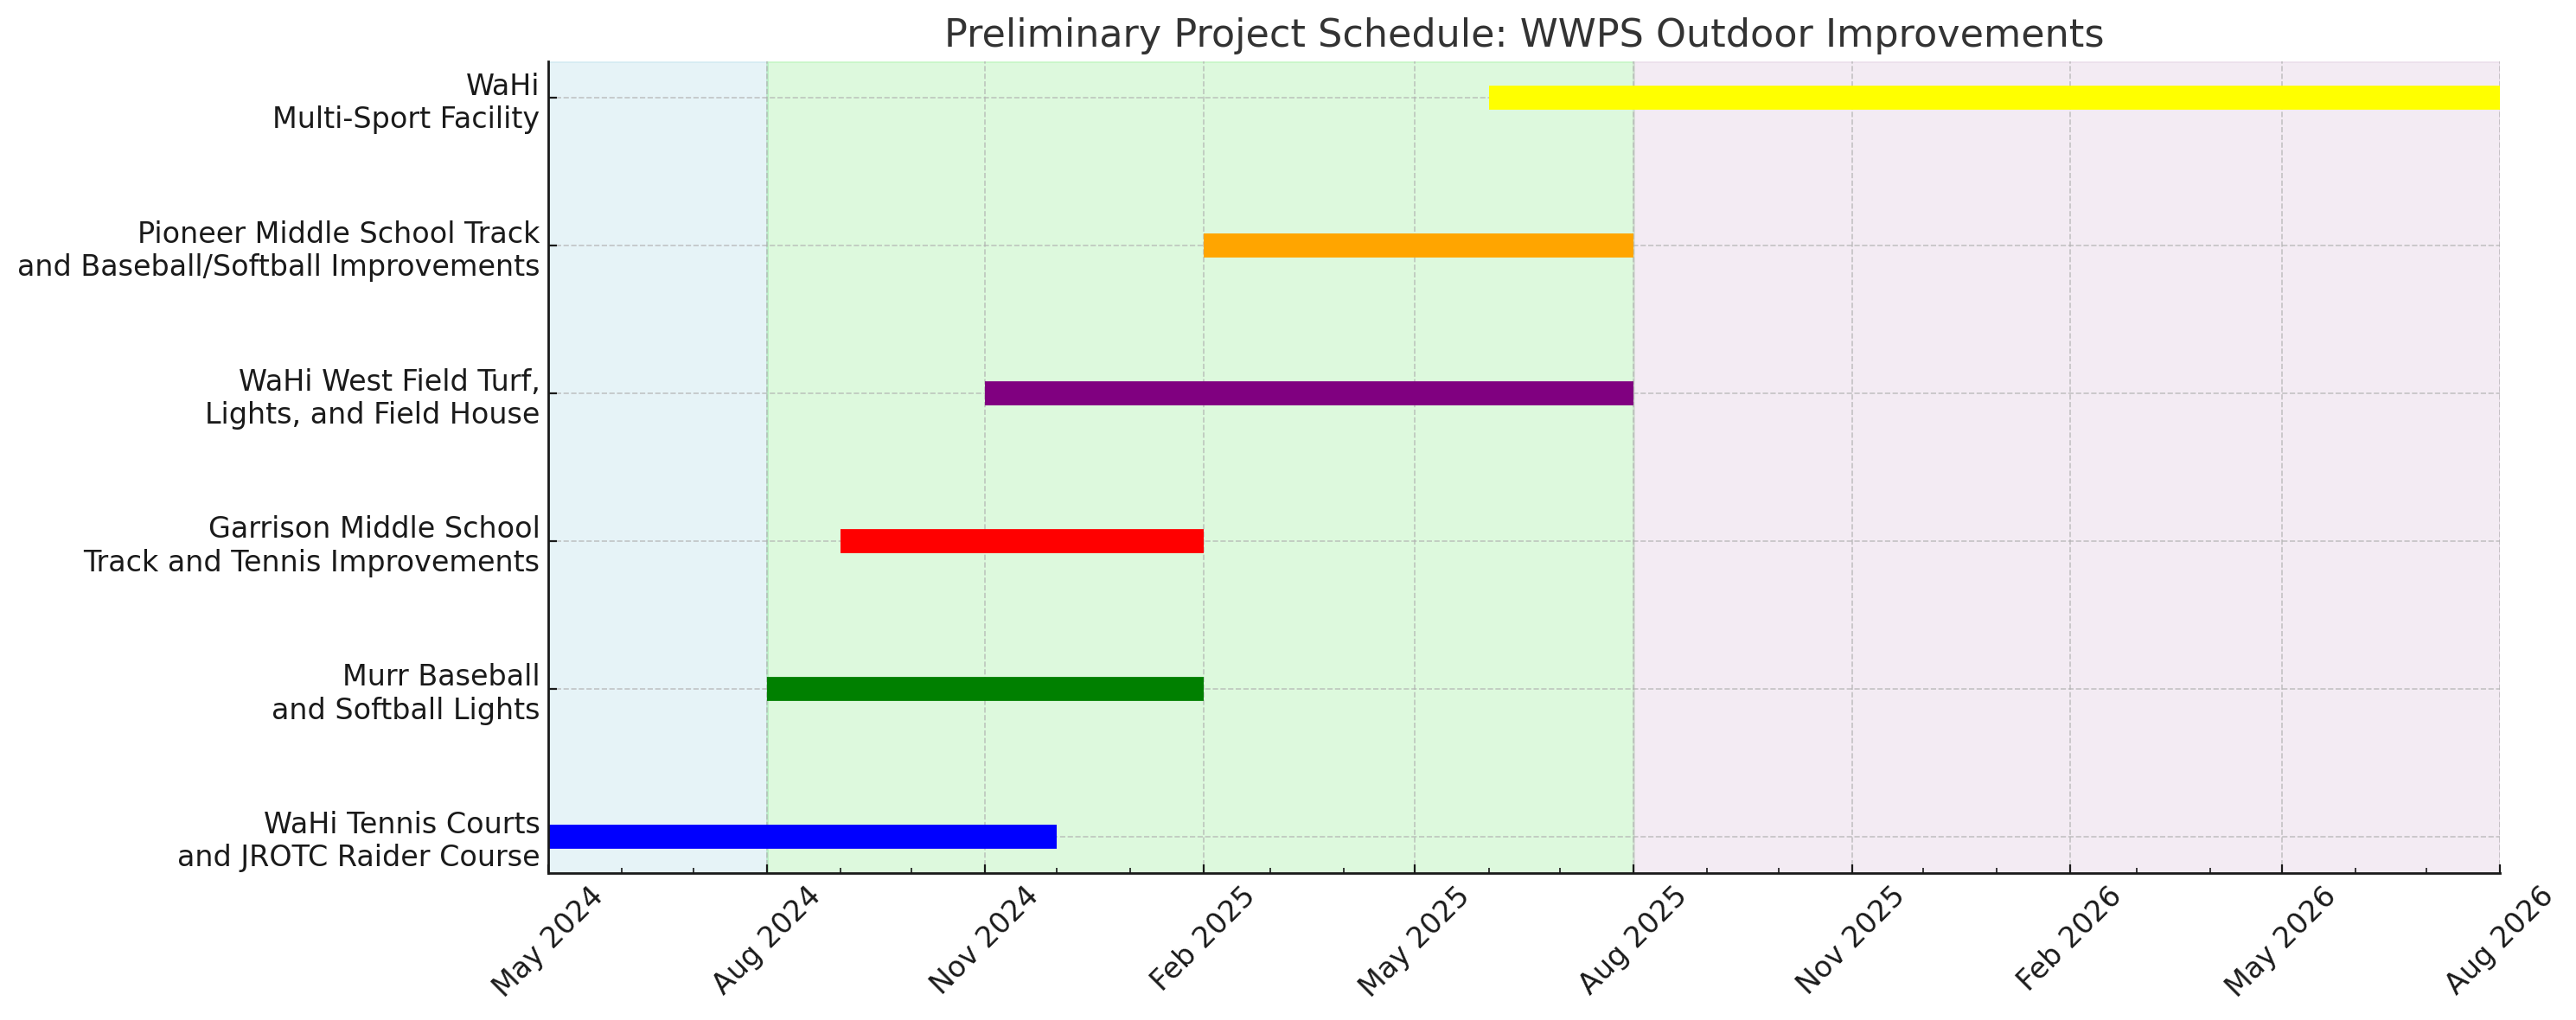 Calendrier préliminaire du projet WWPS ajusté 2